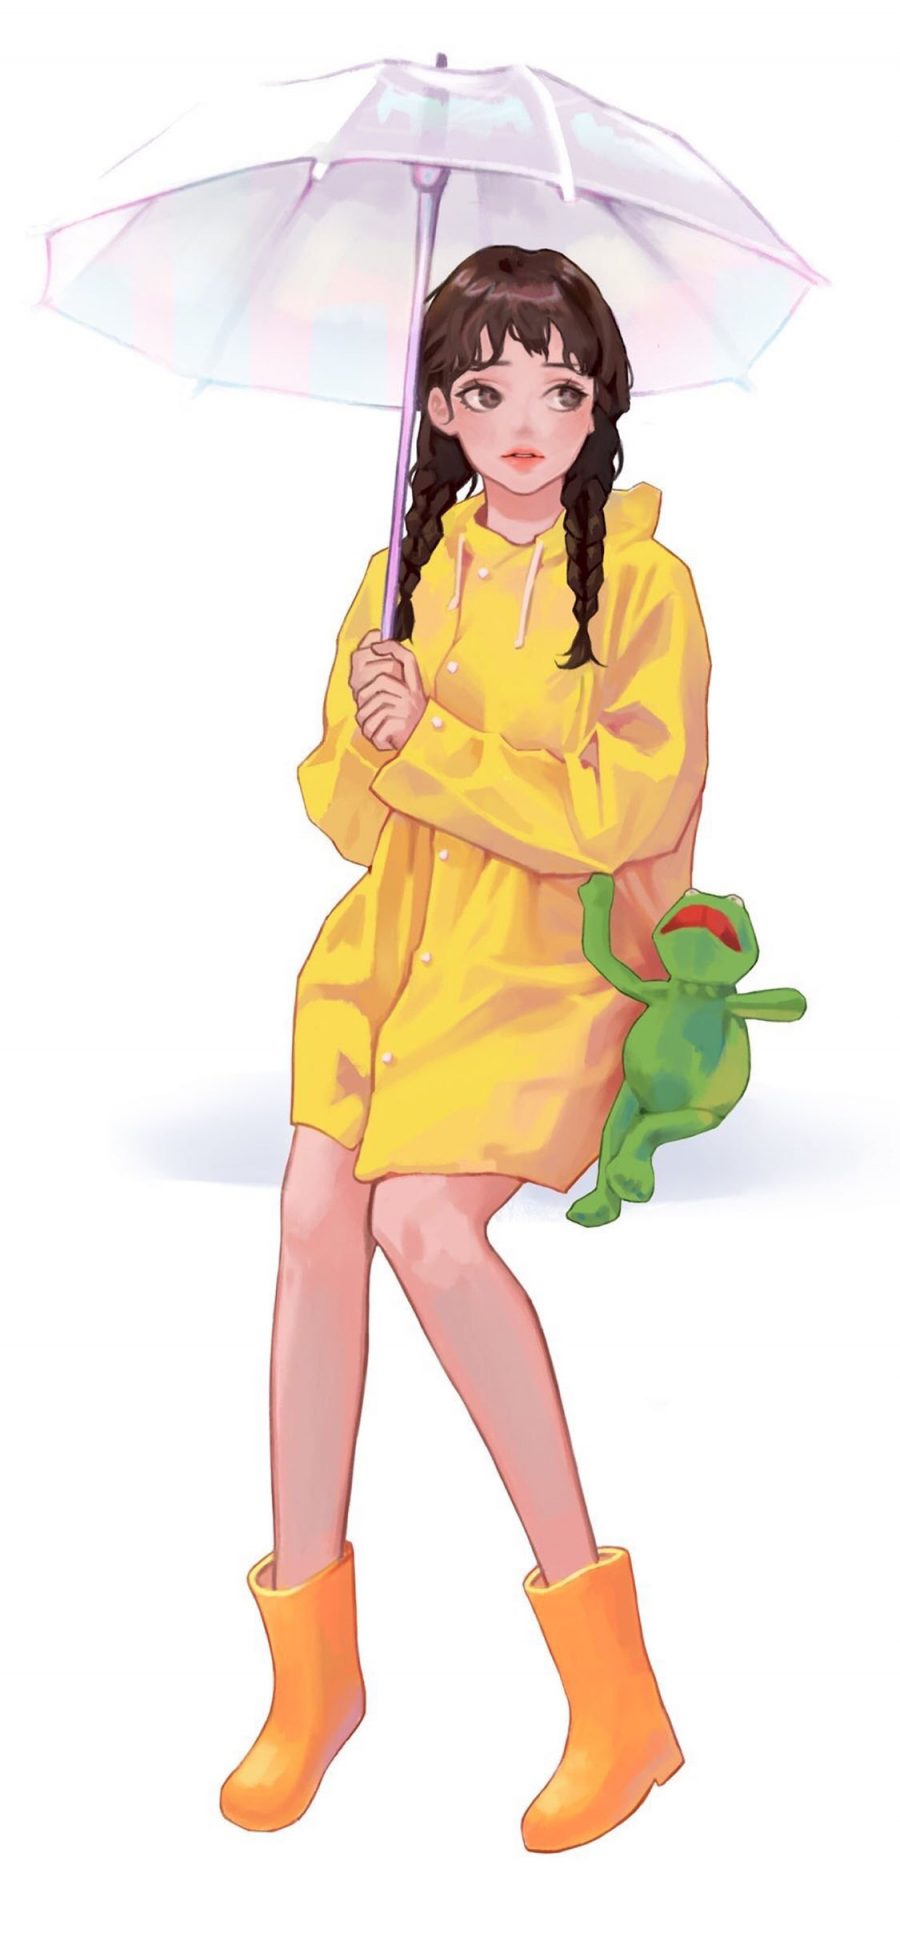 [2436×1125]女孩 插图 雨伞 科米蛙 作者：ubokhee 苹果手机动漫壁纸图片